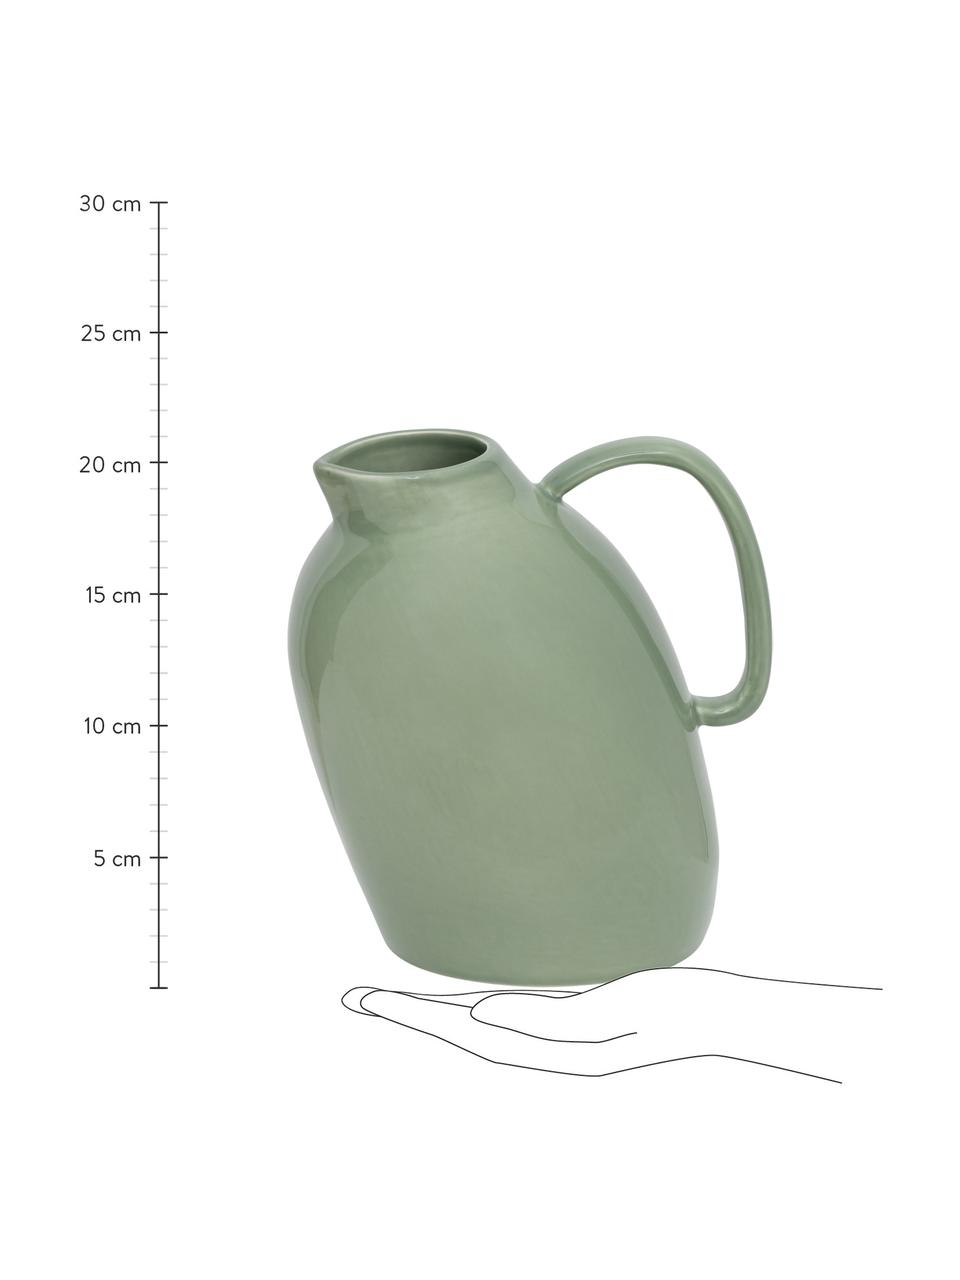 Handgemachter Krug Artisan in organischer Form, Steingut, Grün, 18 x 21 cm